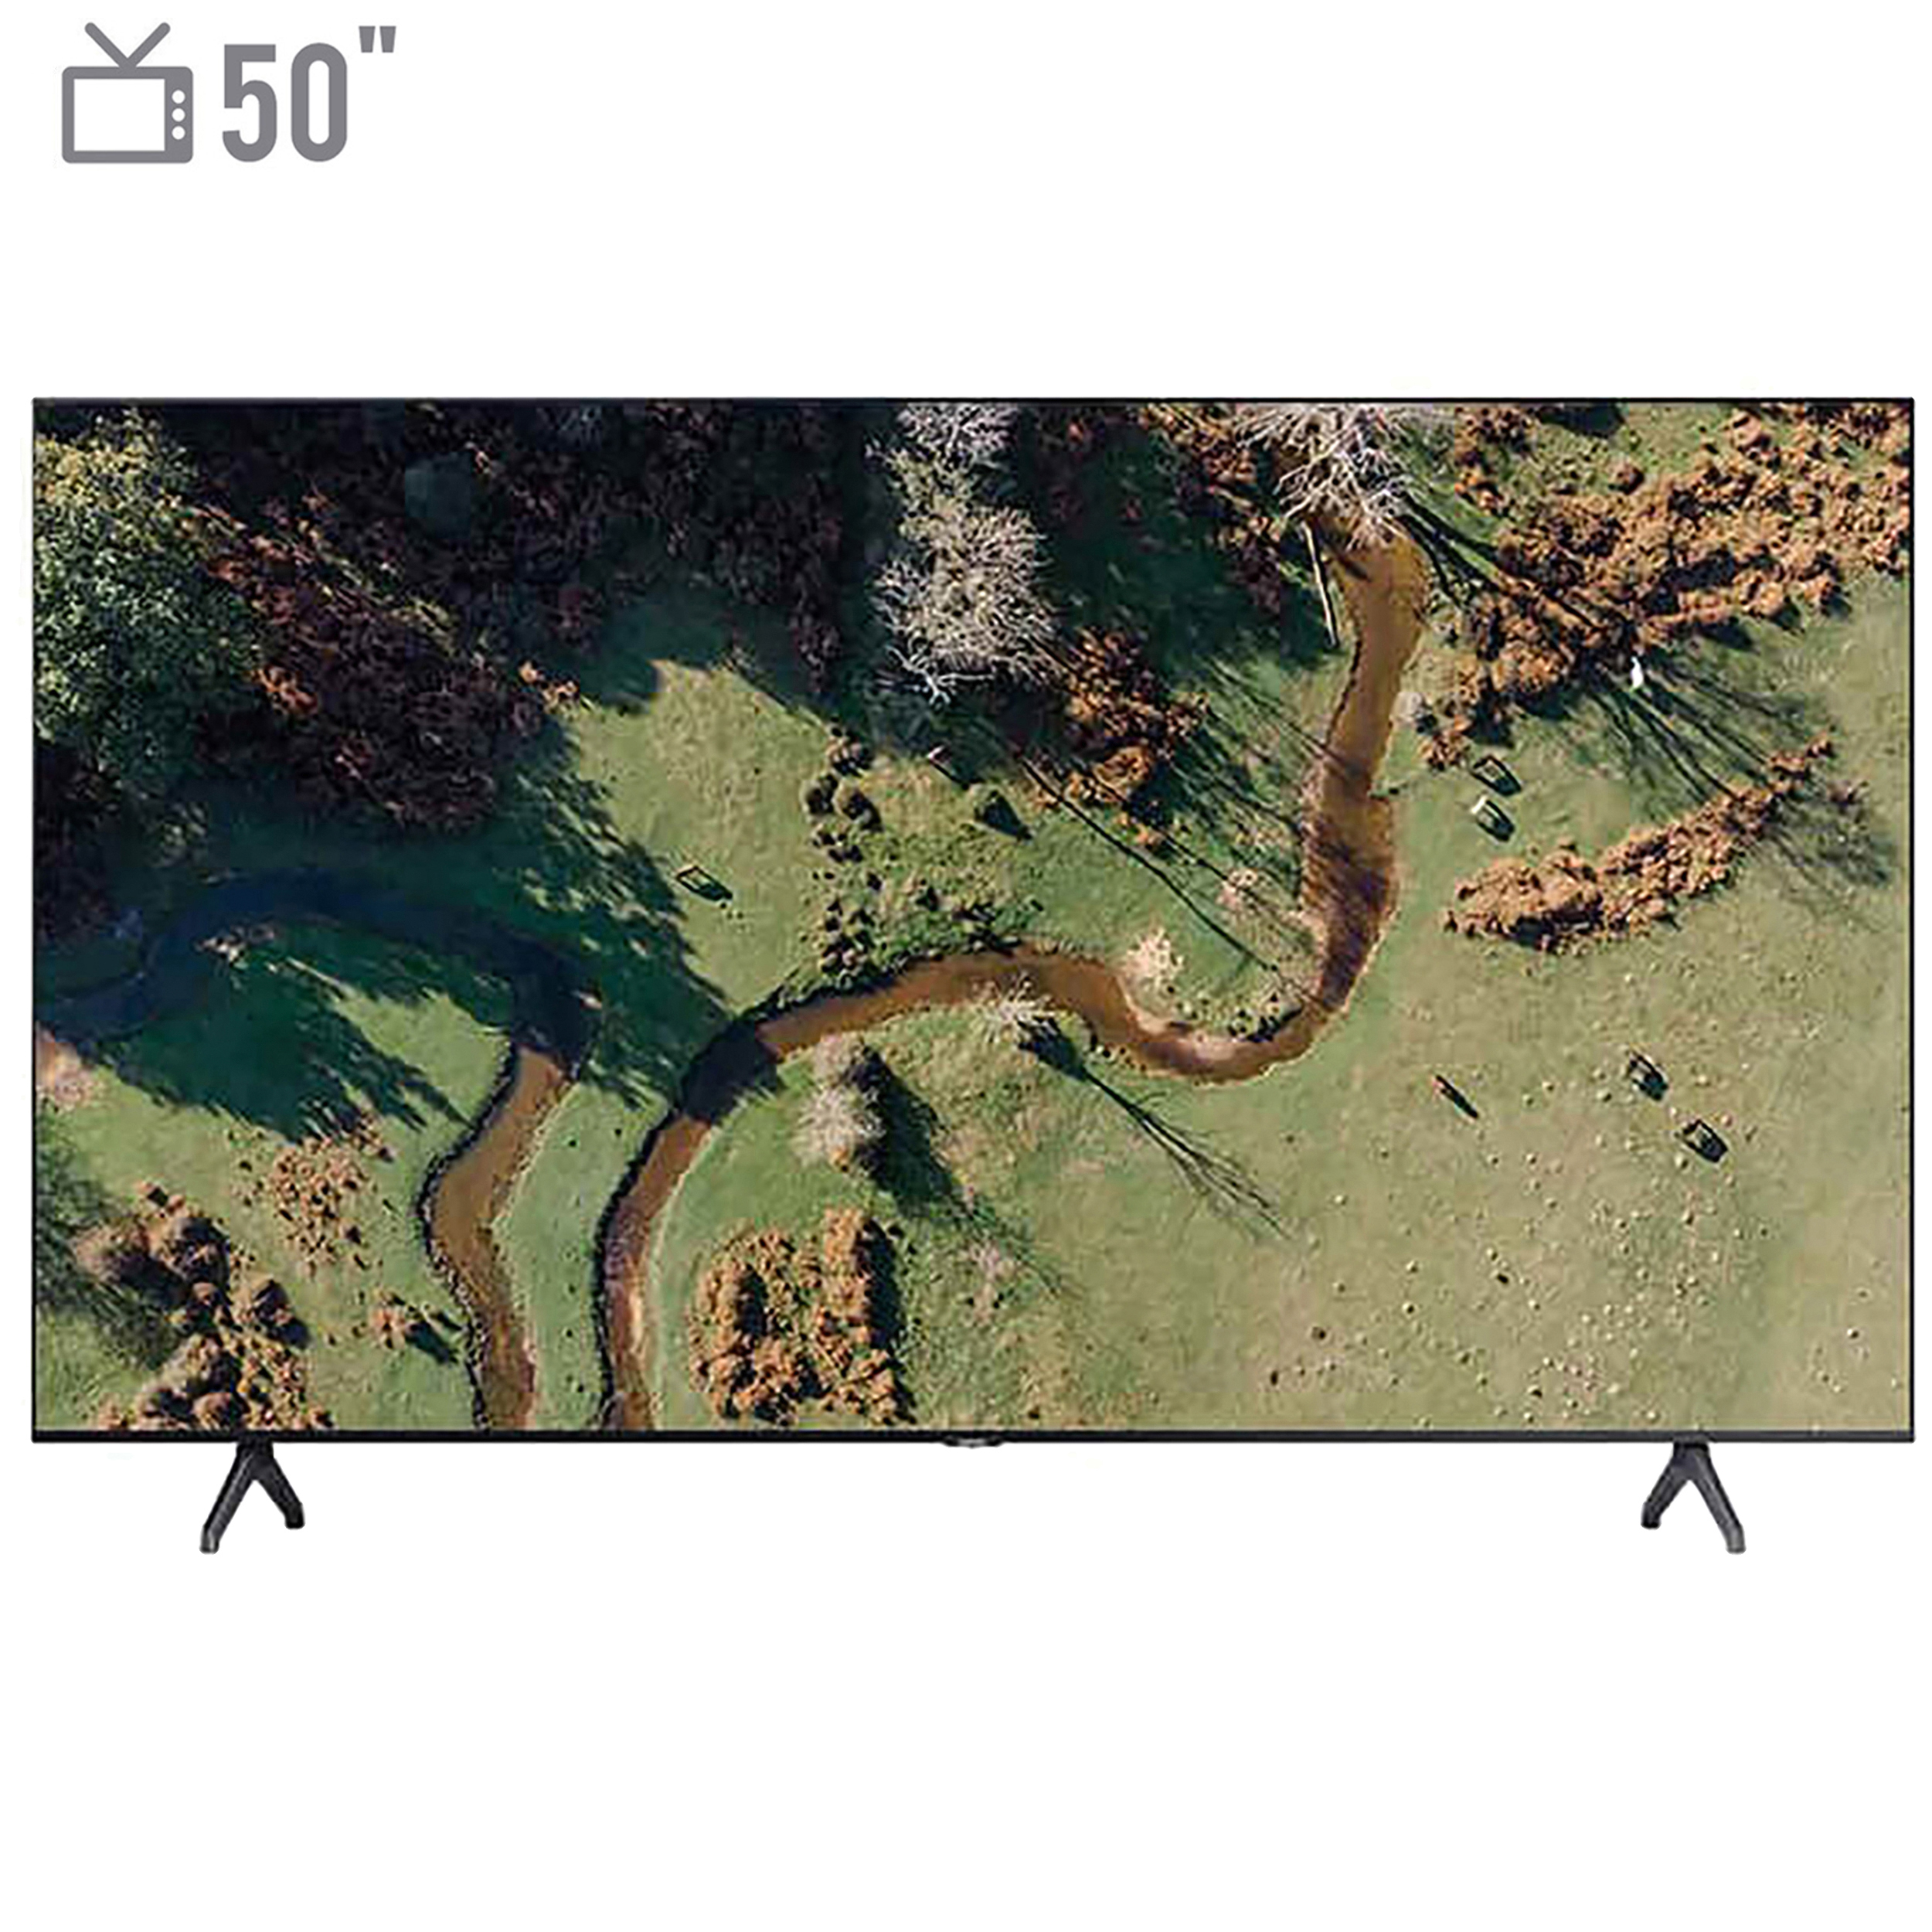 نکته خرید - قیمت روز تلویزیون ال ای دی هوشمند سام الکترونیک مدل UA55TU8500TH سایز 55 اینچ خرید